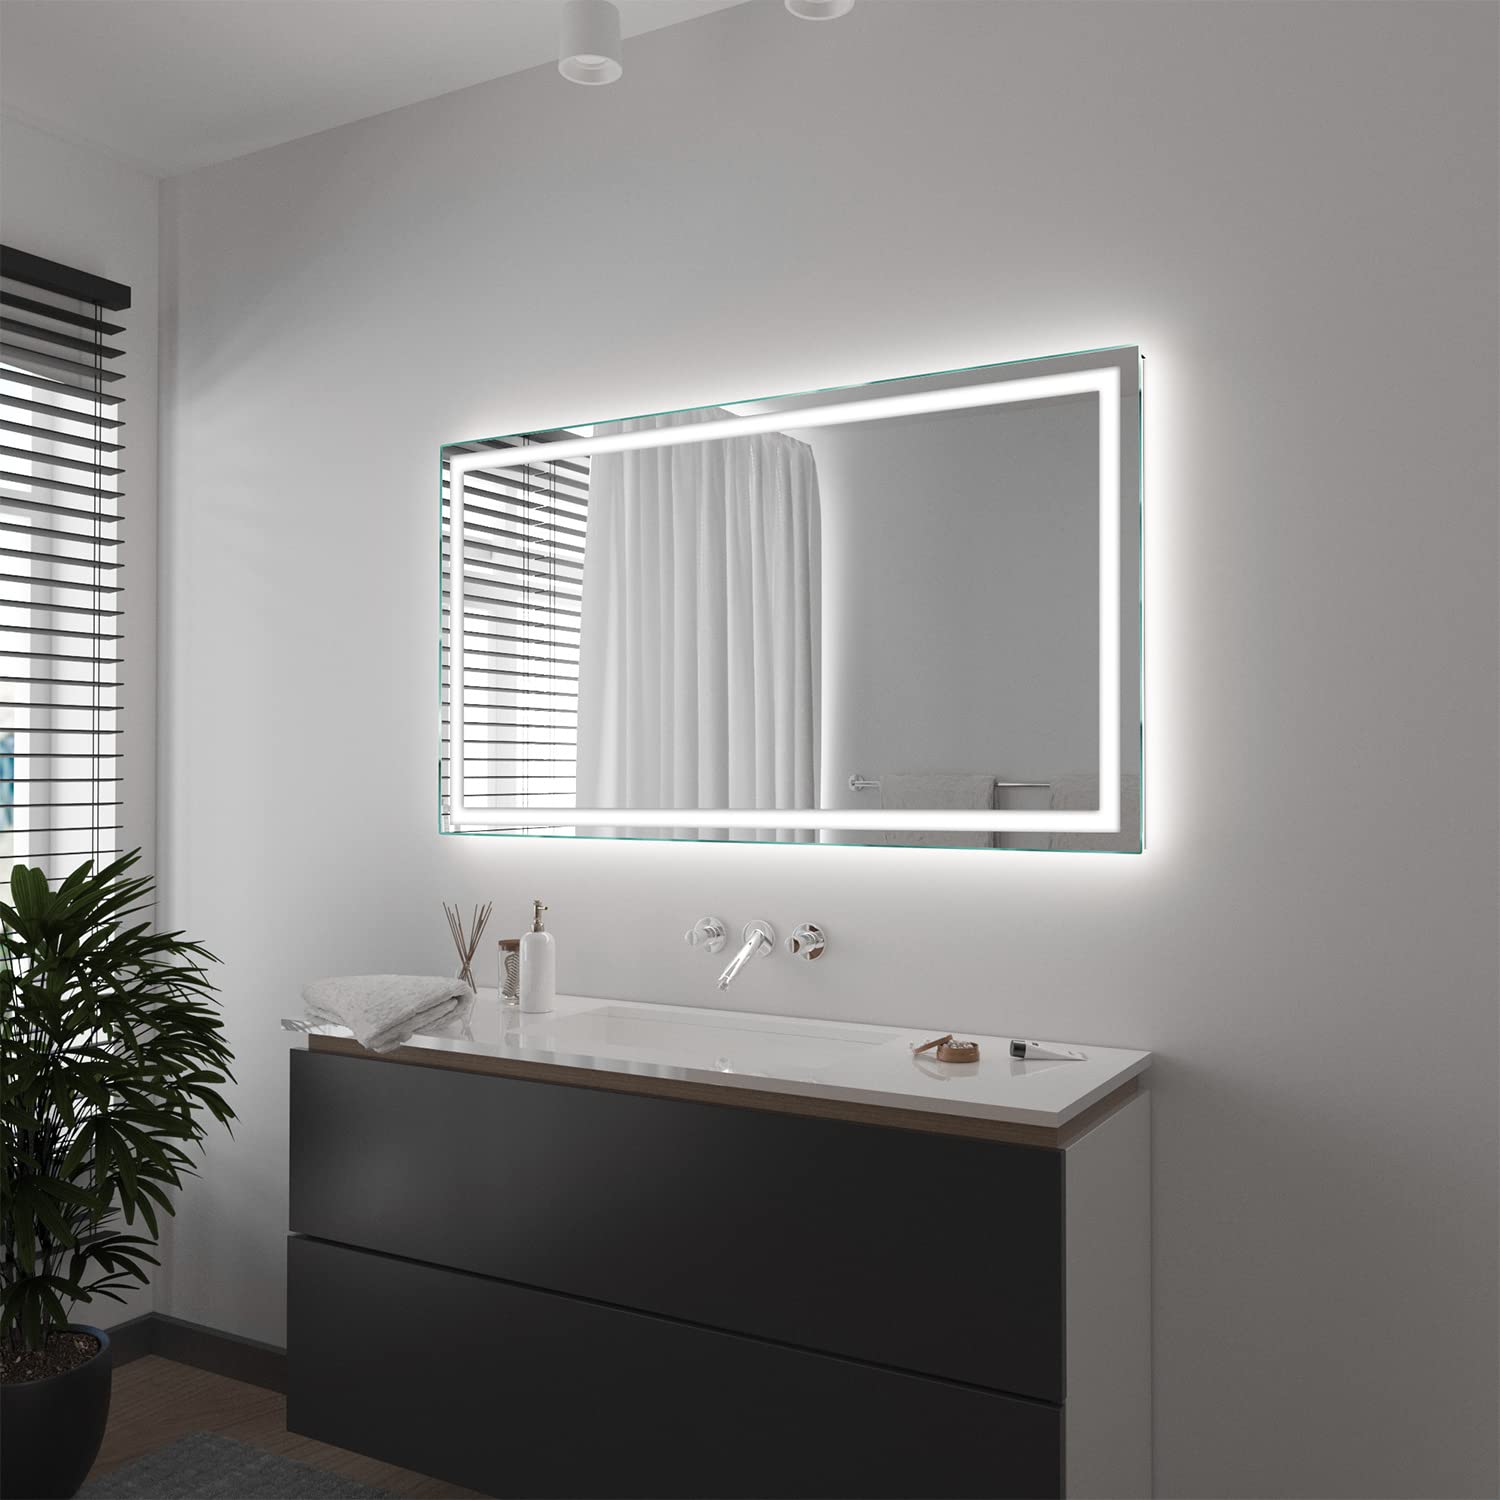 SARAR Wandspiegel mit rundum LED-Beleuchtung 150x90 cm Made in Germany Toulon eckiger Badspiegel Spiegel mit Beleuchtung Badezimmerspiegel